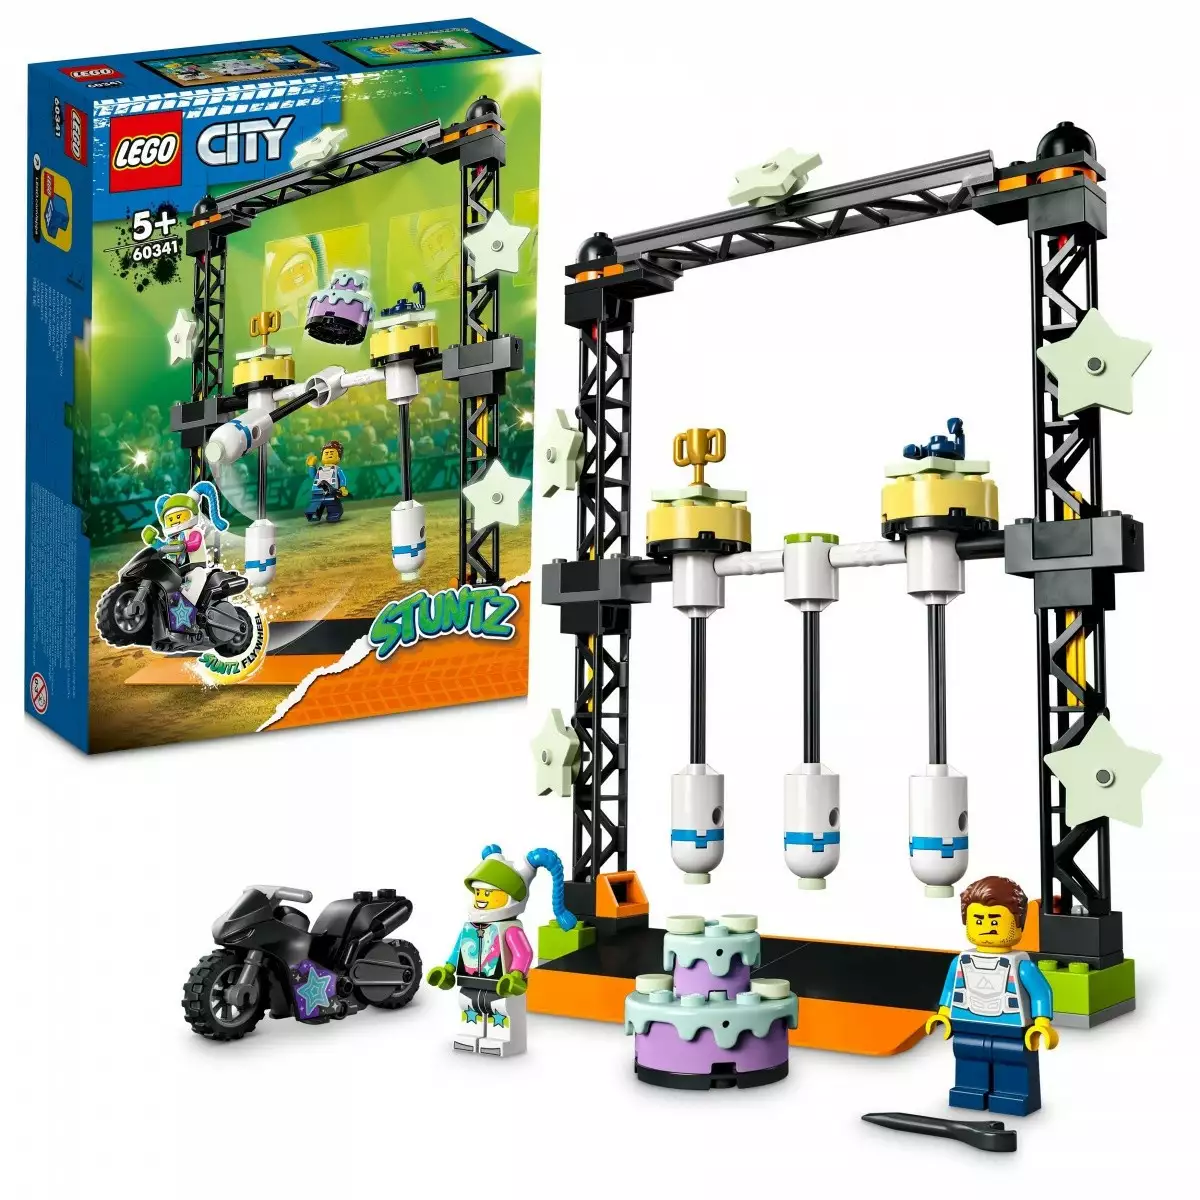 LEGO Klocki City 60341 Wyzwanie kaskaderskie: przewracanie